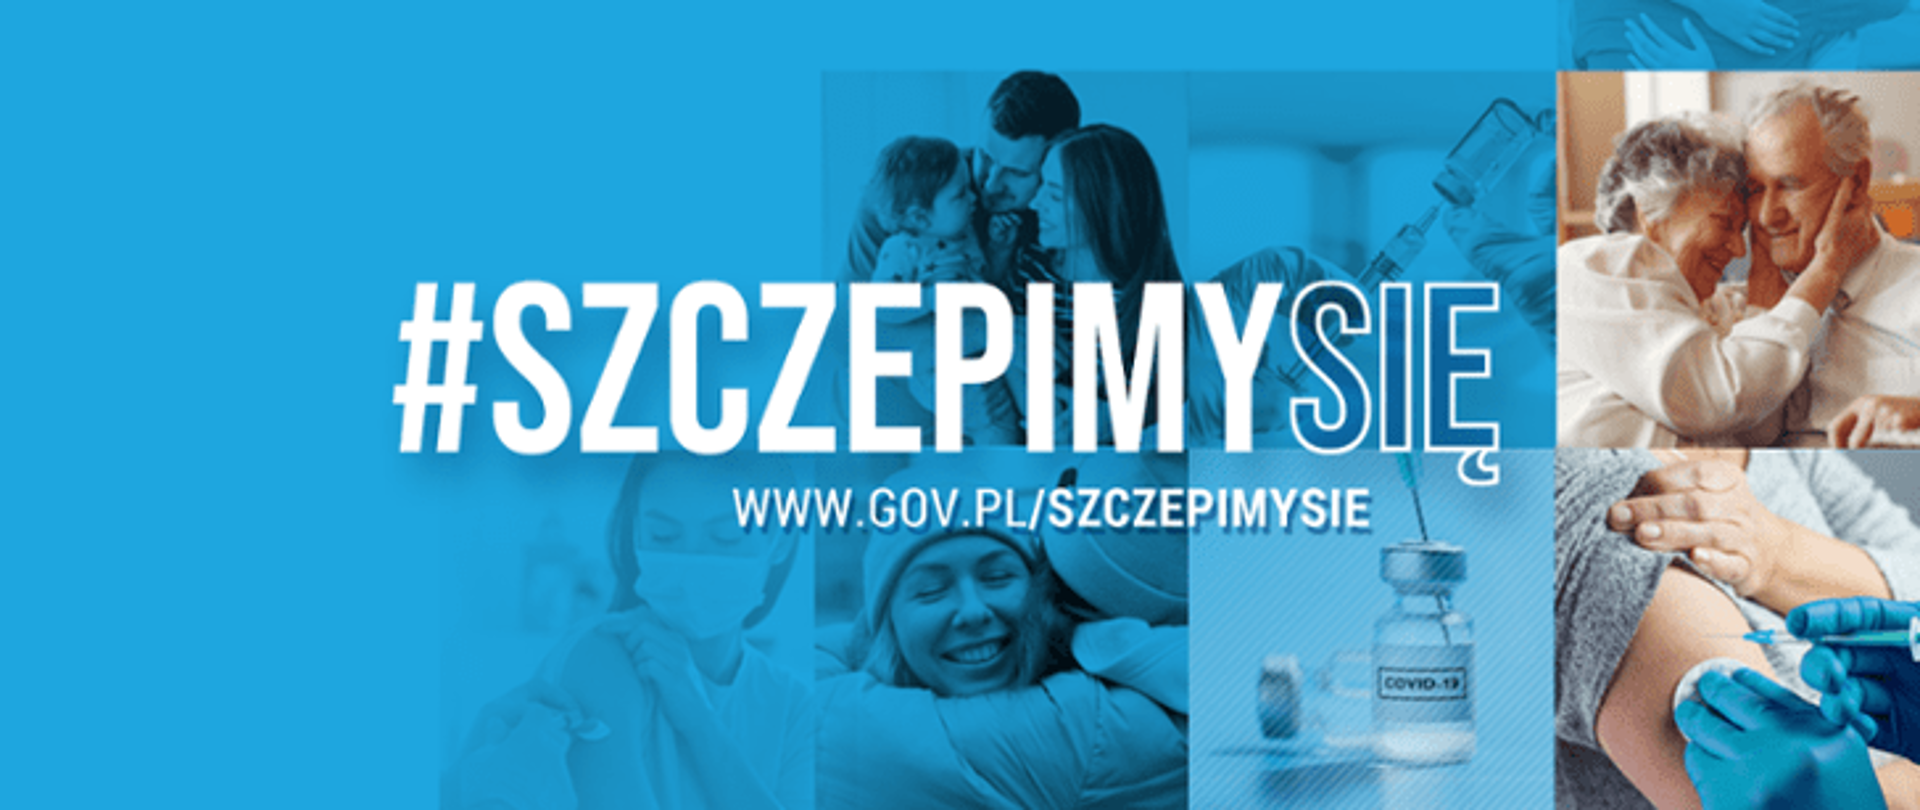 Na zdjęciu widać logo strony internetowej gov.pl - szczepmy się.